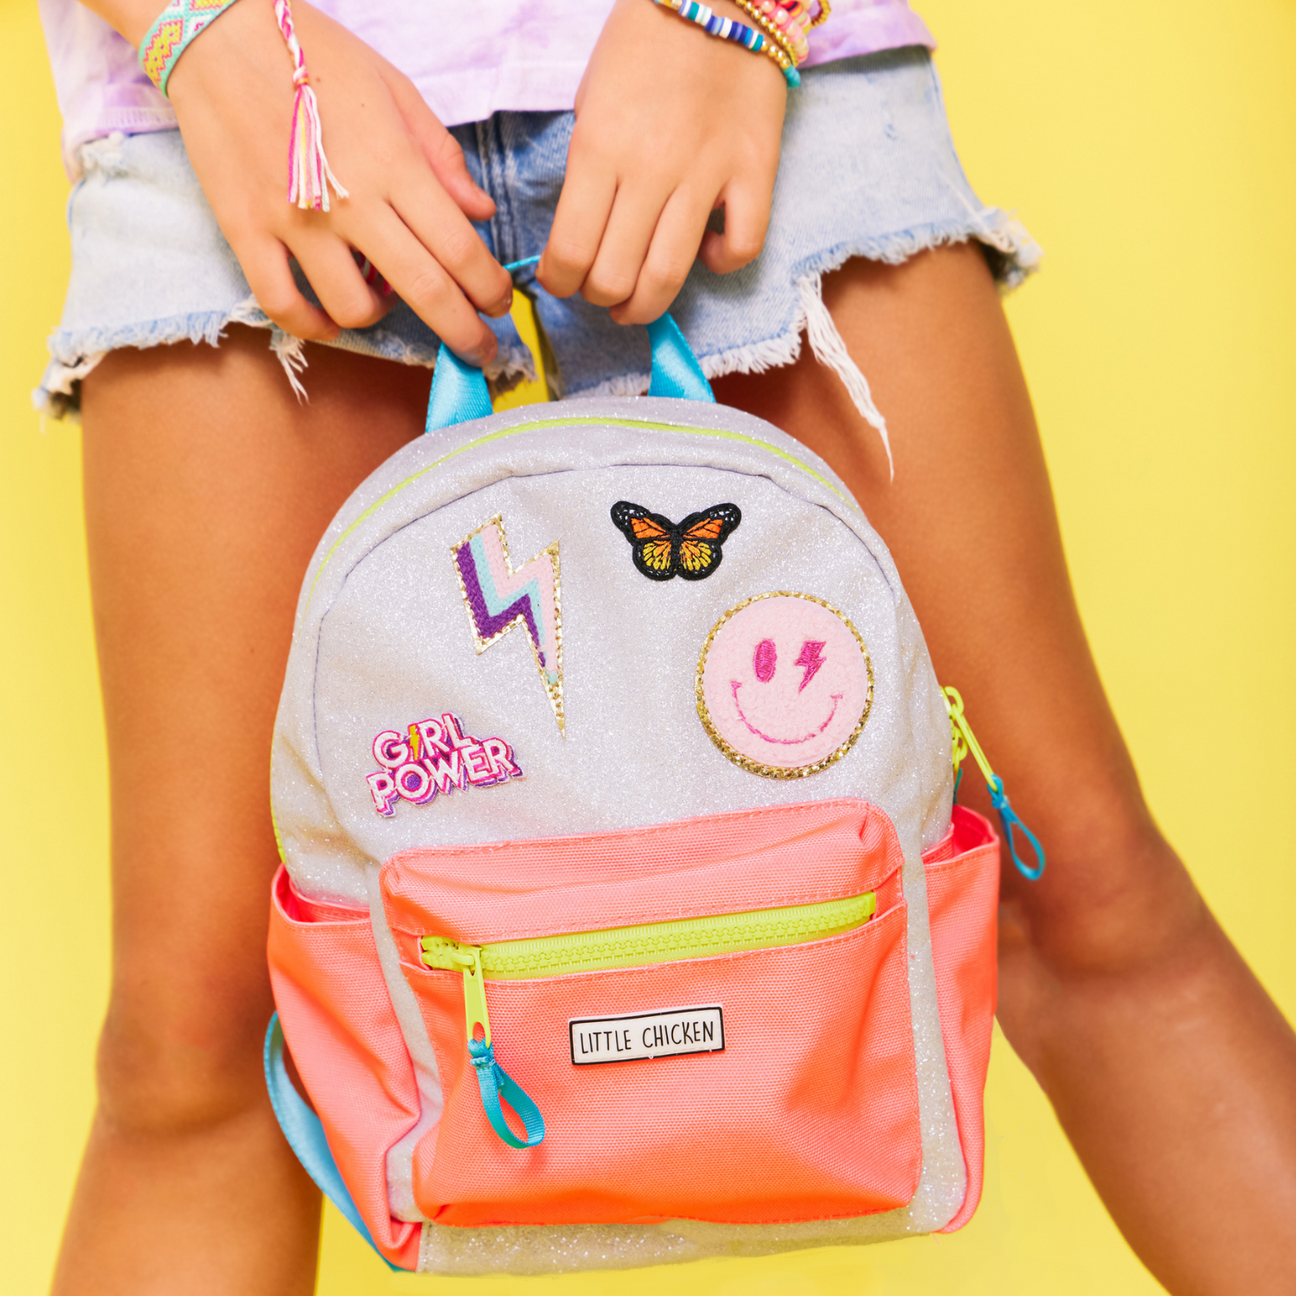 Glitter Mini Backpack